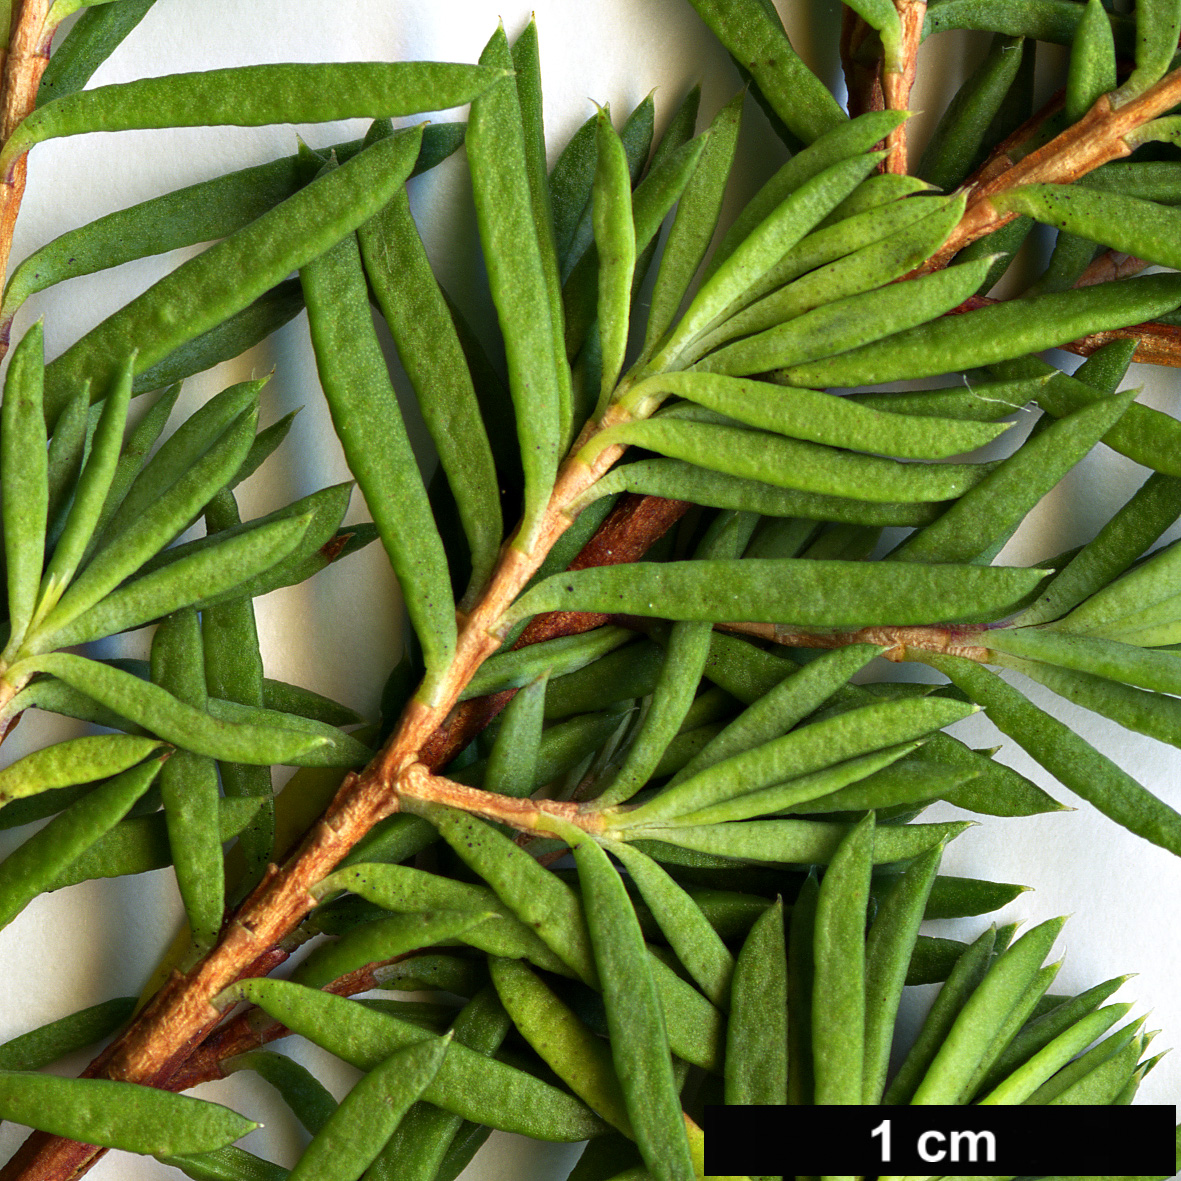 High resolution image: Family: Myrtaceae - Genus: Darwinia - Taxon: taxifolia